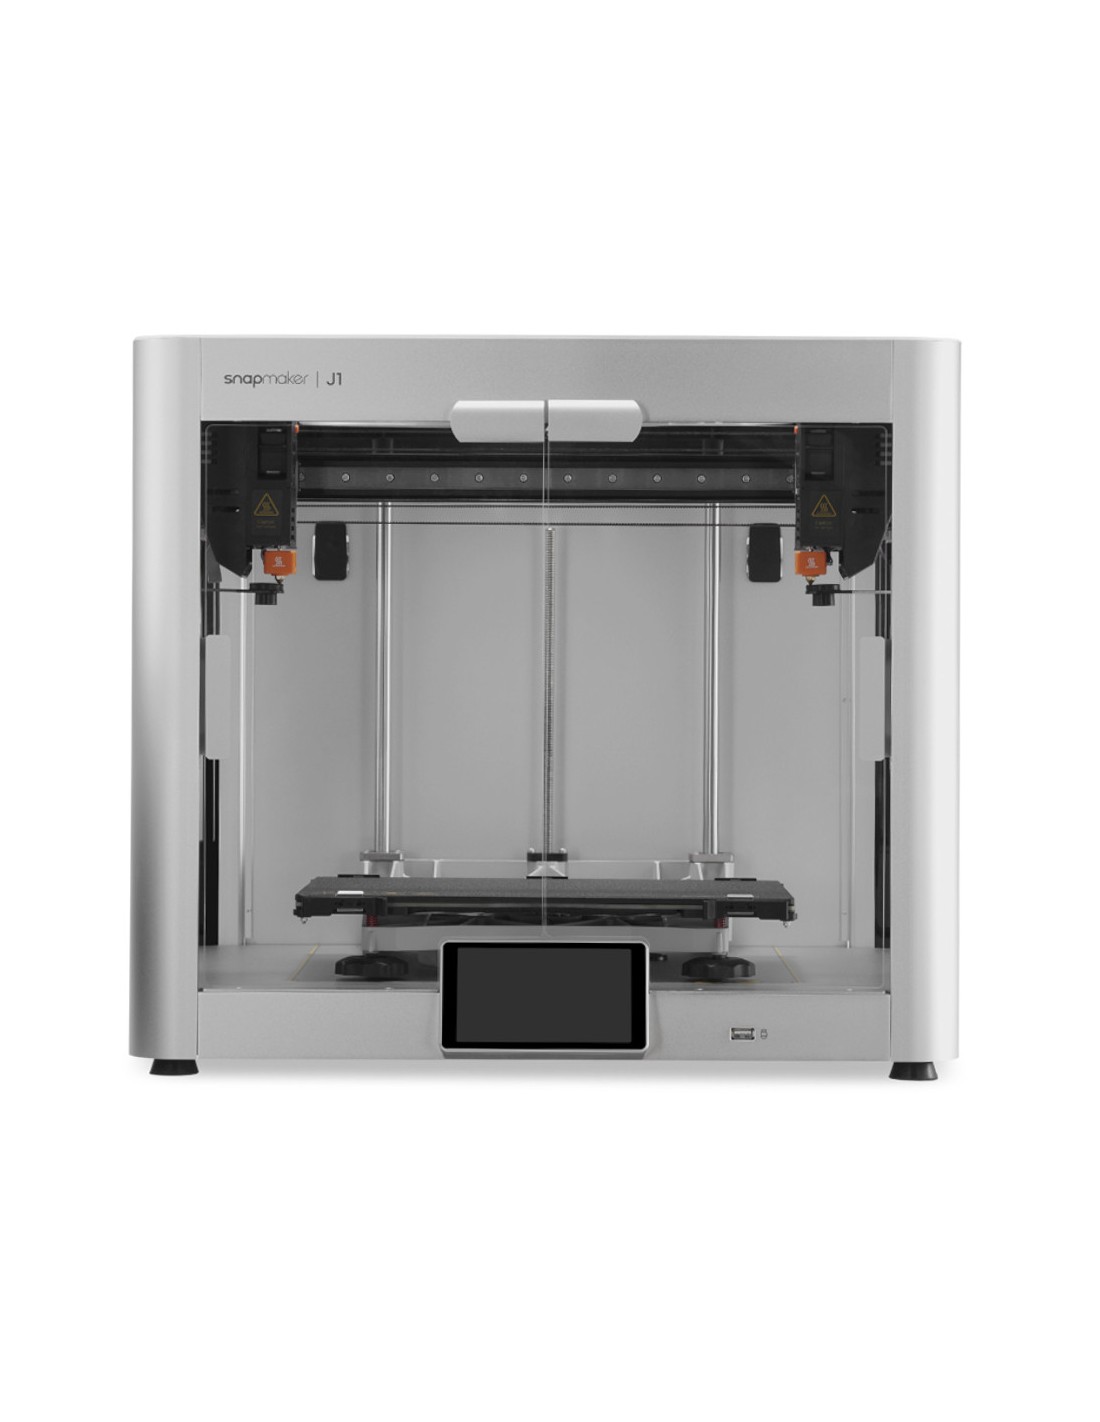 Snapmaker J1S - 3D-Drucker